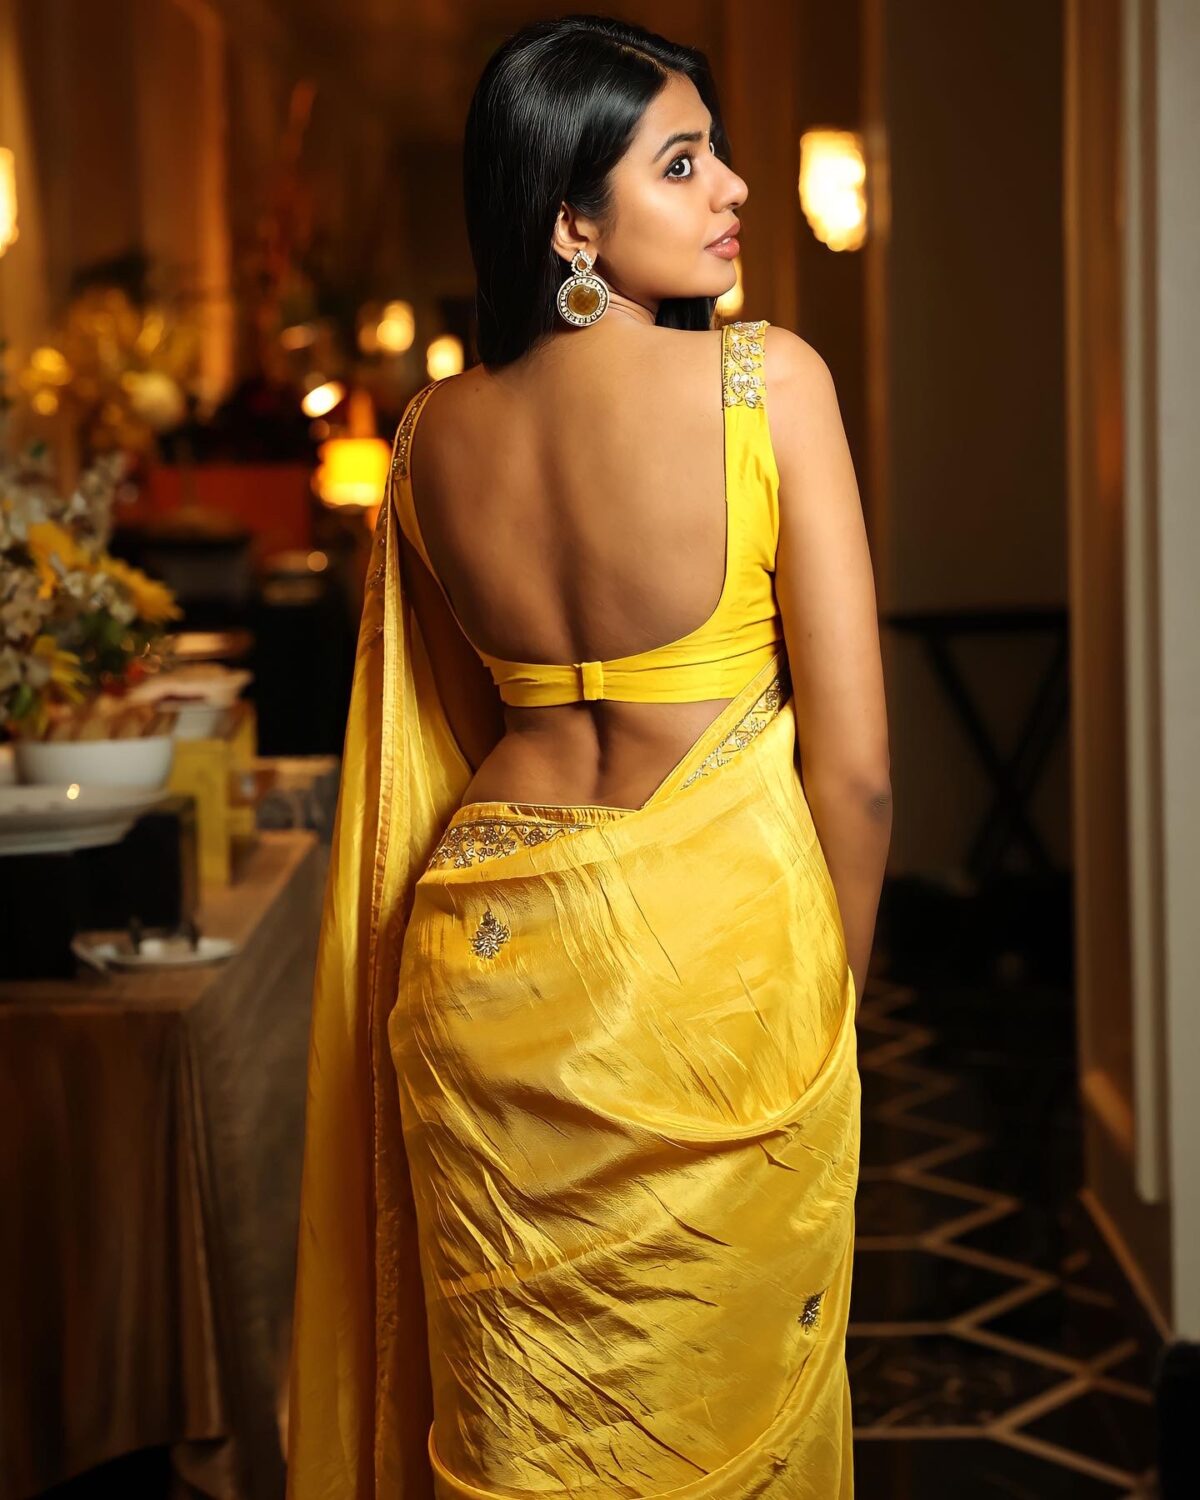 Pic Talk : Shivani Sizzles In Yellow!